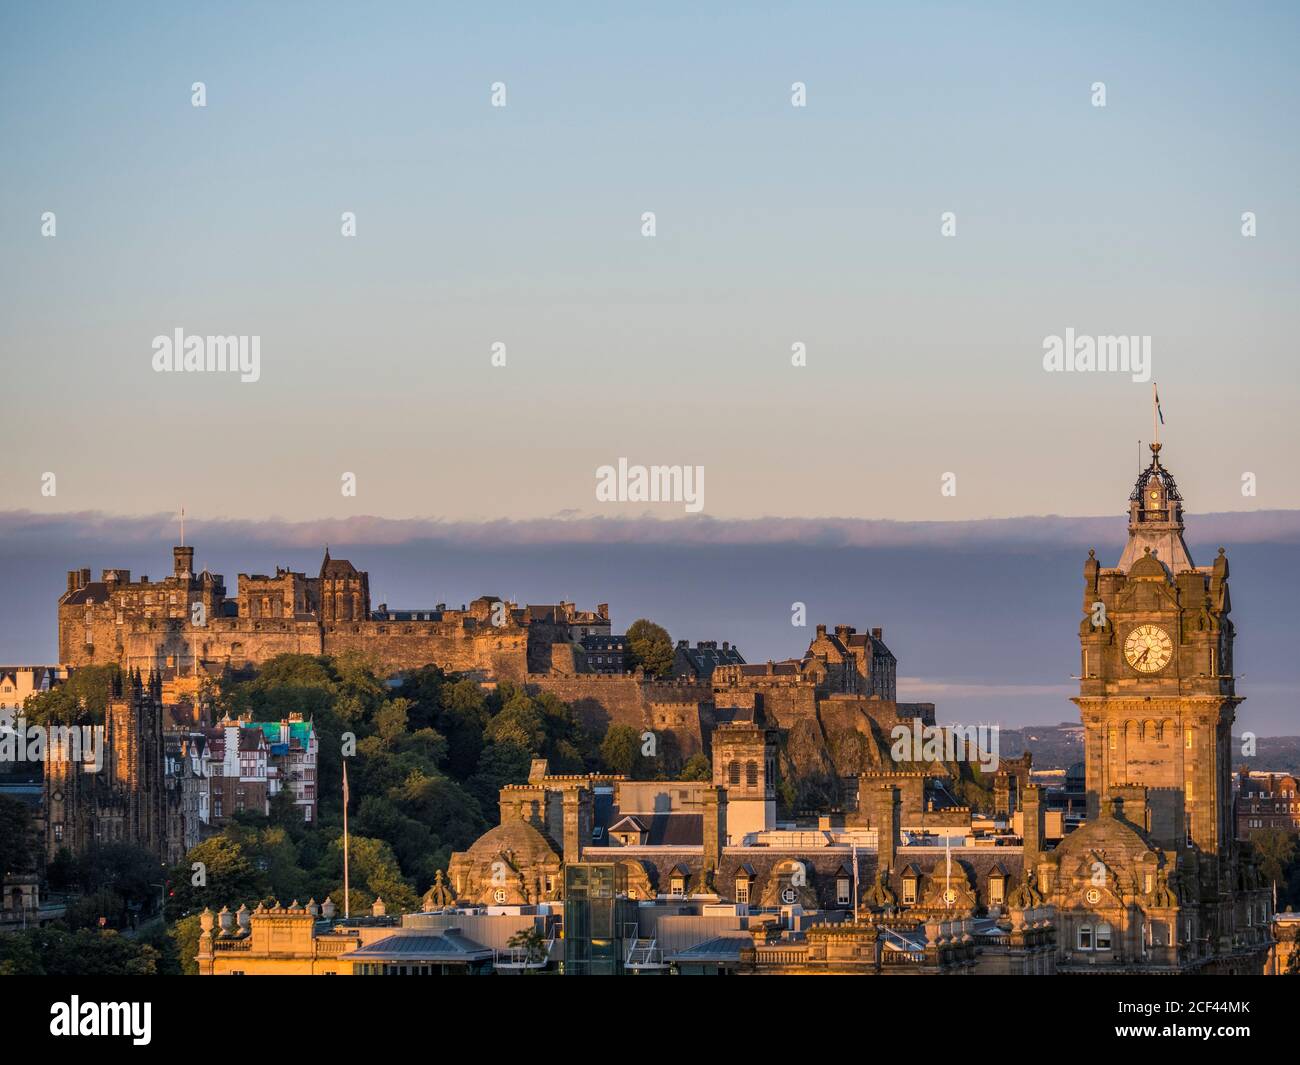 Amanecer, paisaje con la Torre del Hotel Balmoral, y el Castillo de Edimburgo, Edimburgo, Escocia, Reino Unido, GB. Foto de stock